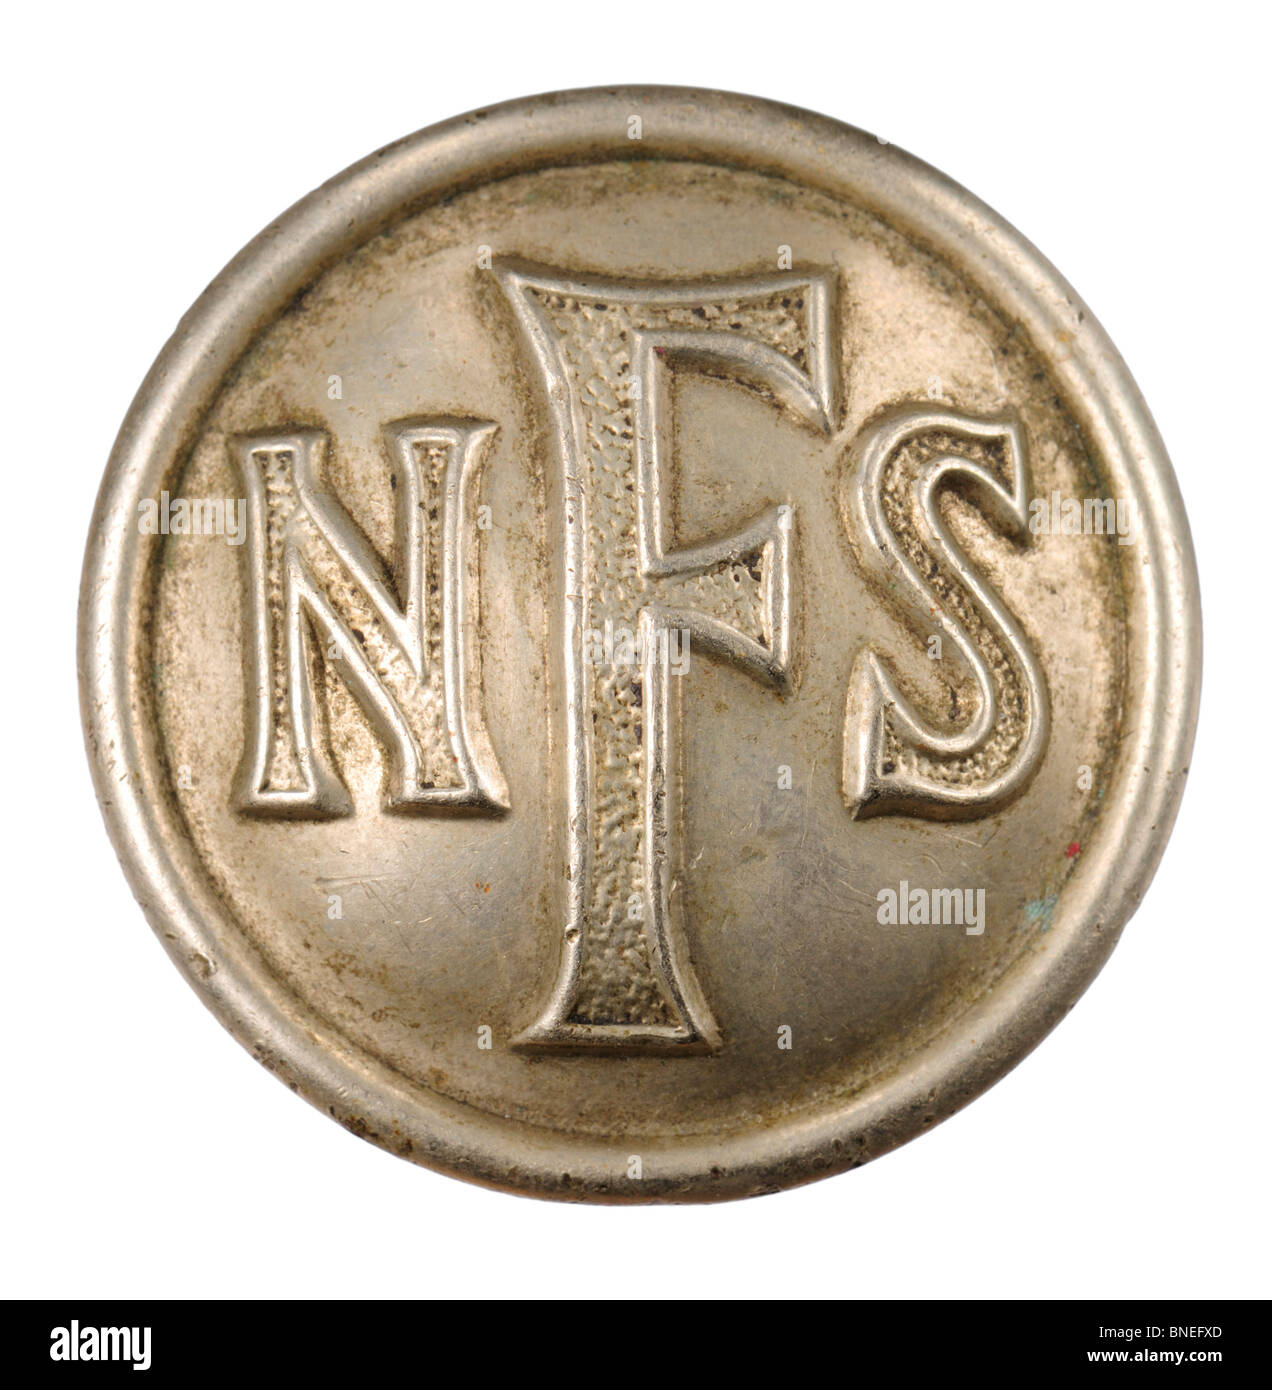 NFS (National Fire Service) Button. Second World War / British Stock Photo